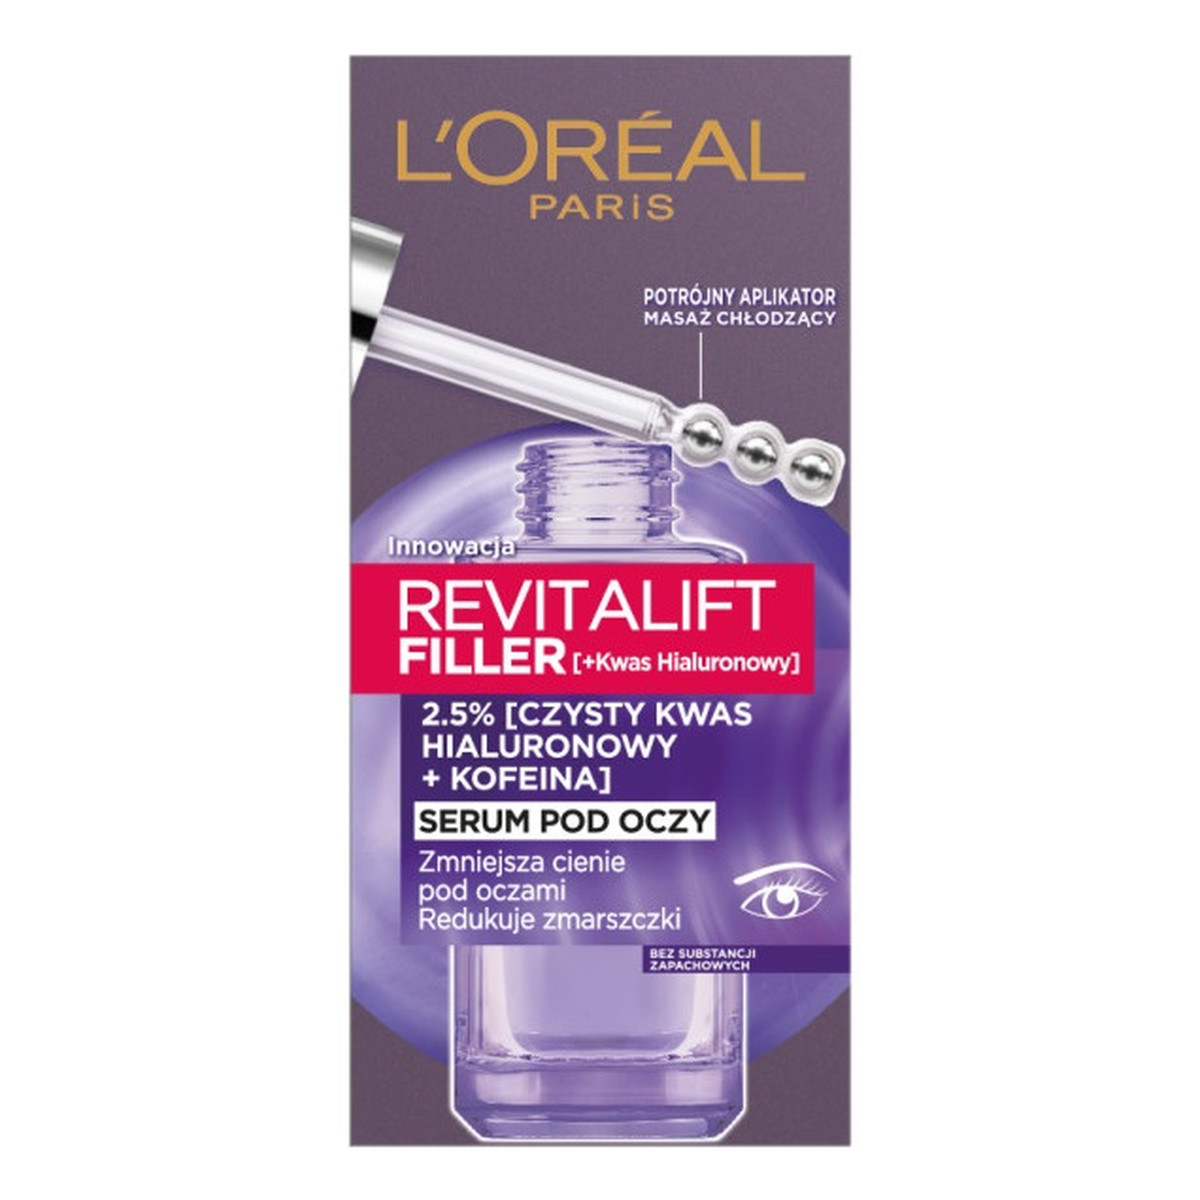 L'Oreal Paris Revitalift filler [+kwas hialuronowy] serum pod oczy redukujące zmarszczki 20ml